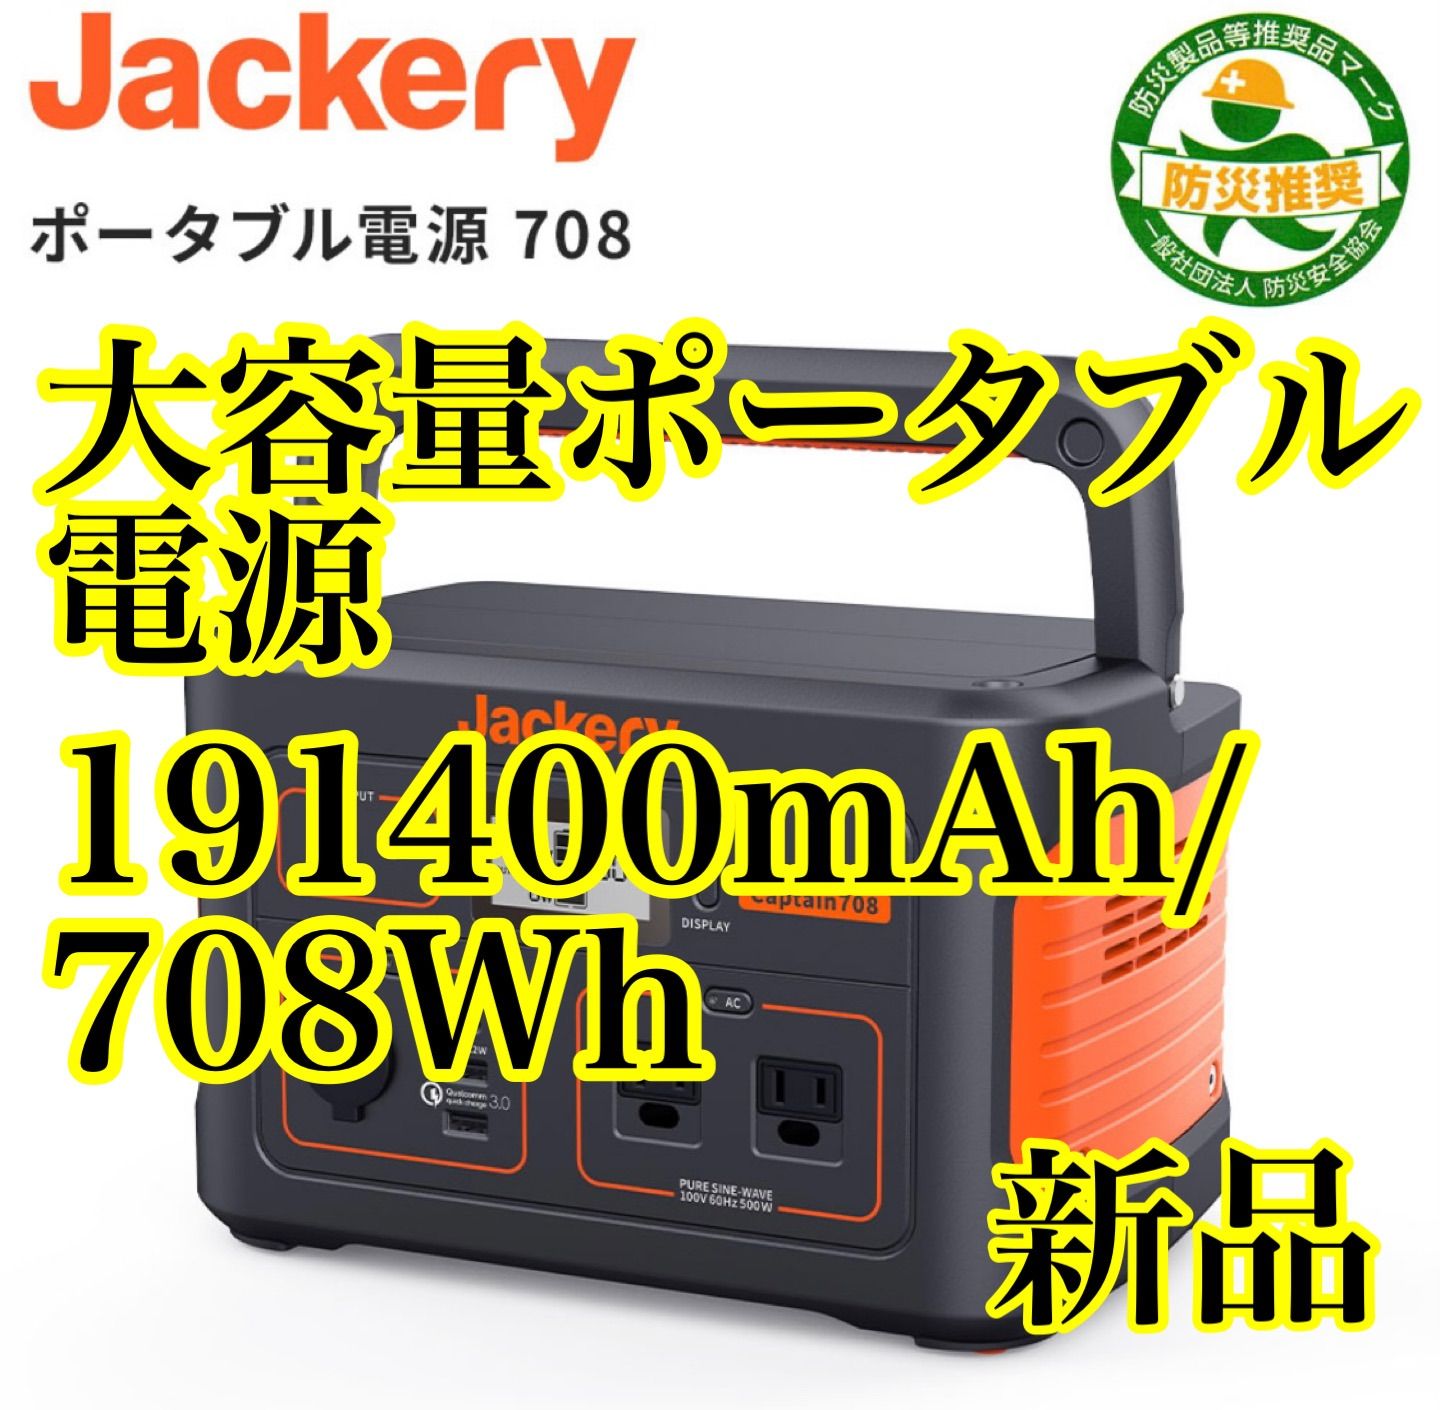 値下新品Jackery ポータブル電源 708発電機 大容量191400mAh - アウトドア